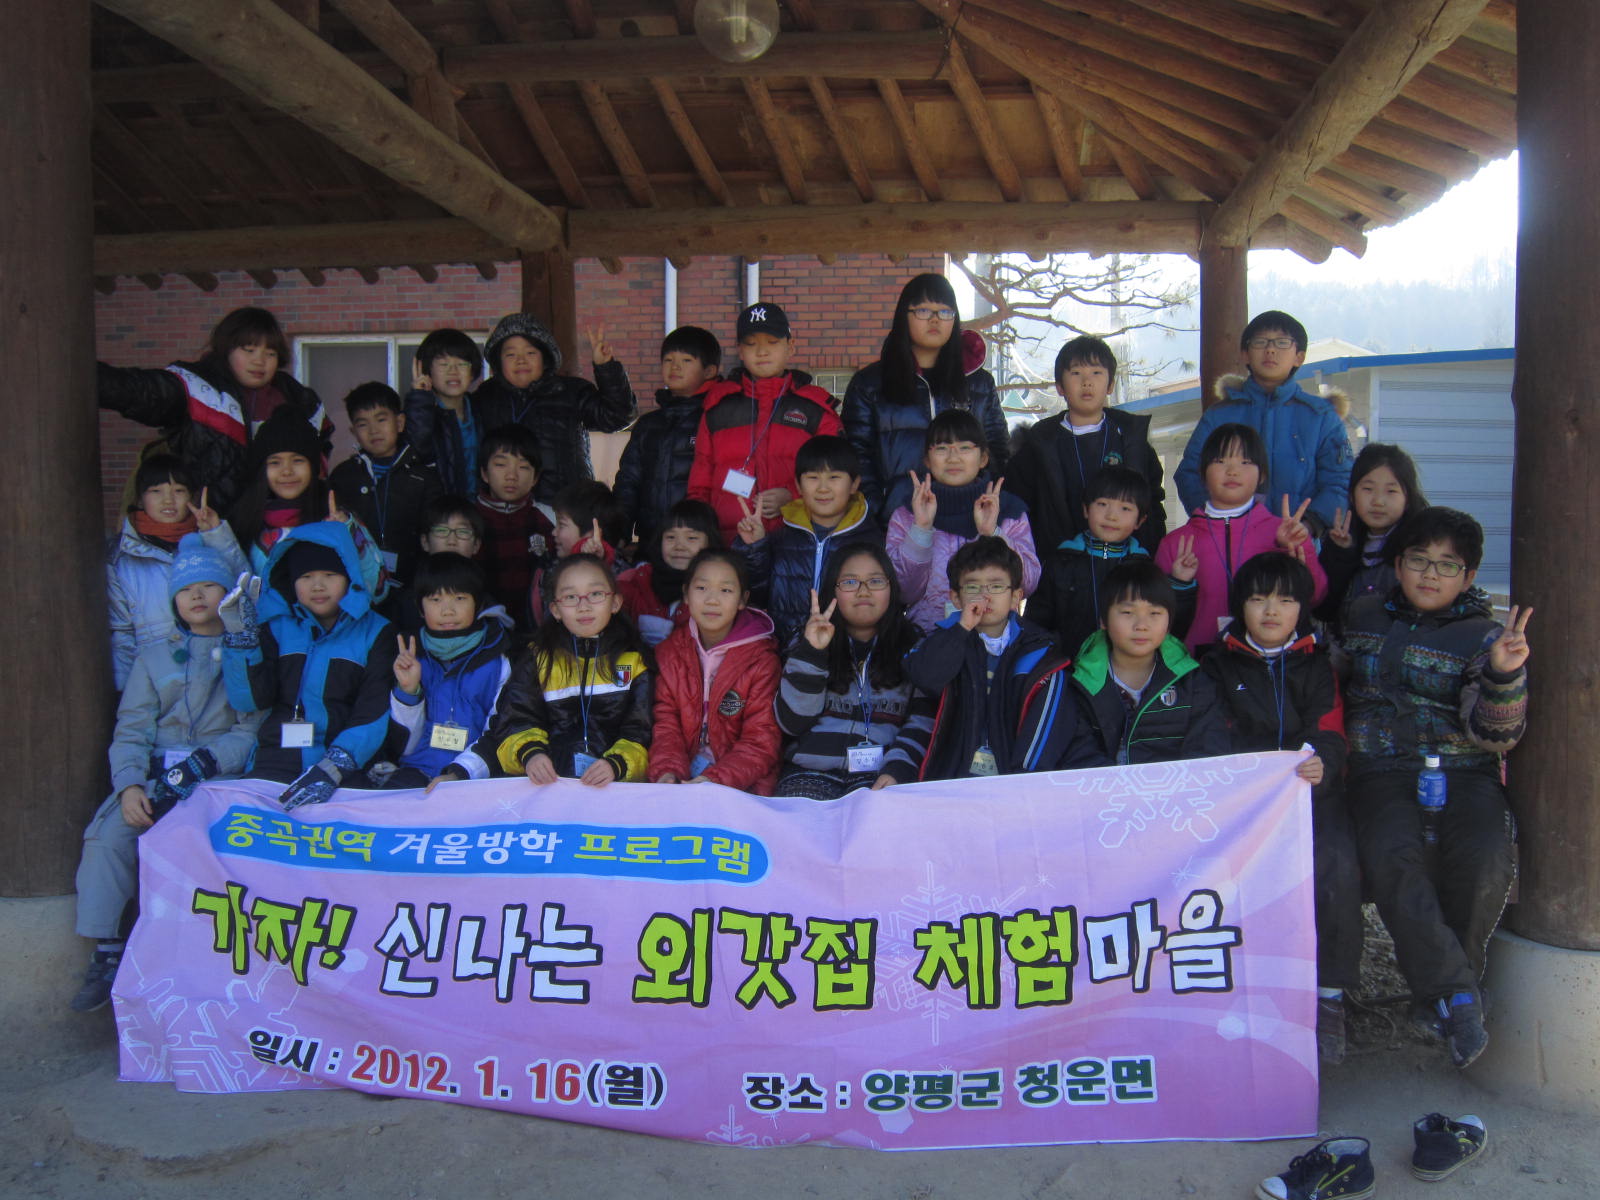 중곡권역 외갓집체험프로그램 참가 초등학생 단체사진 20120117JPG13051601.JPG